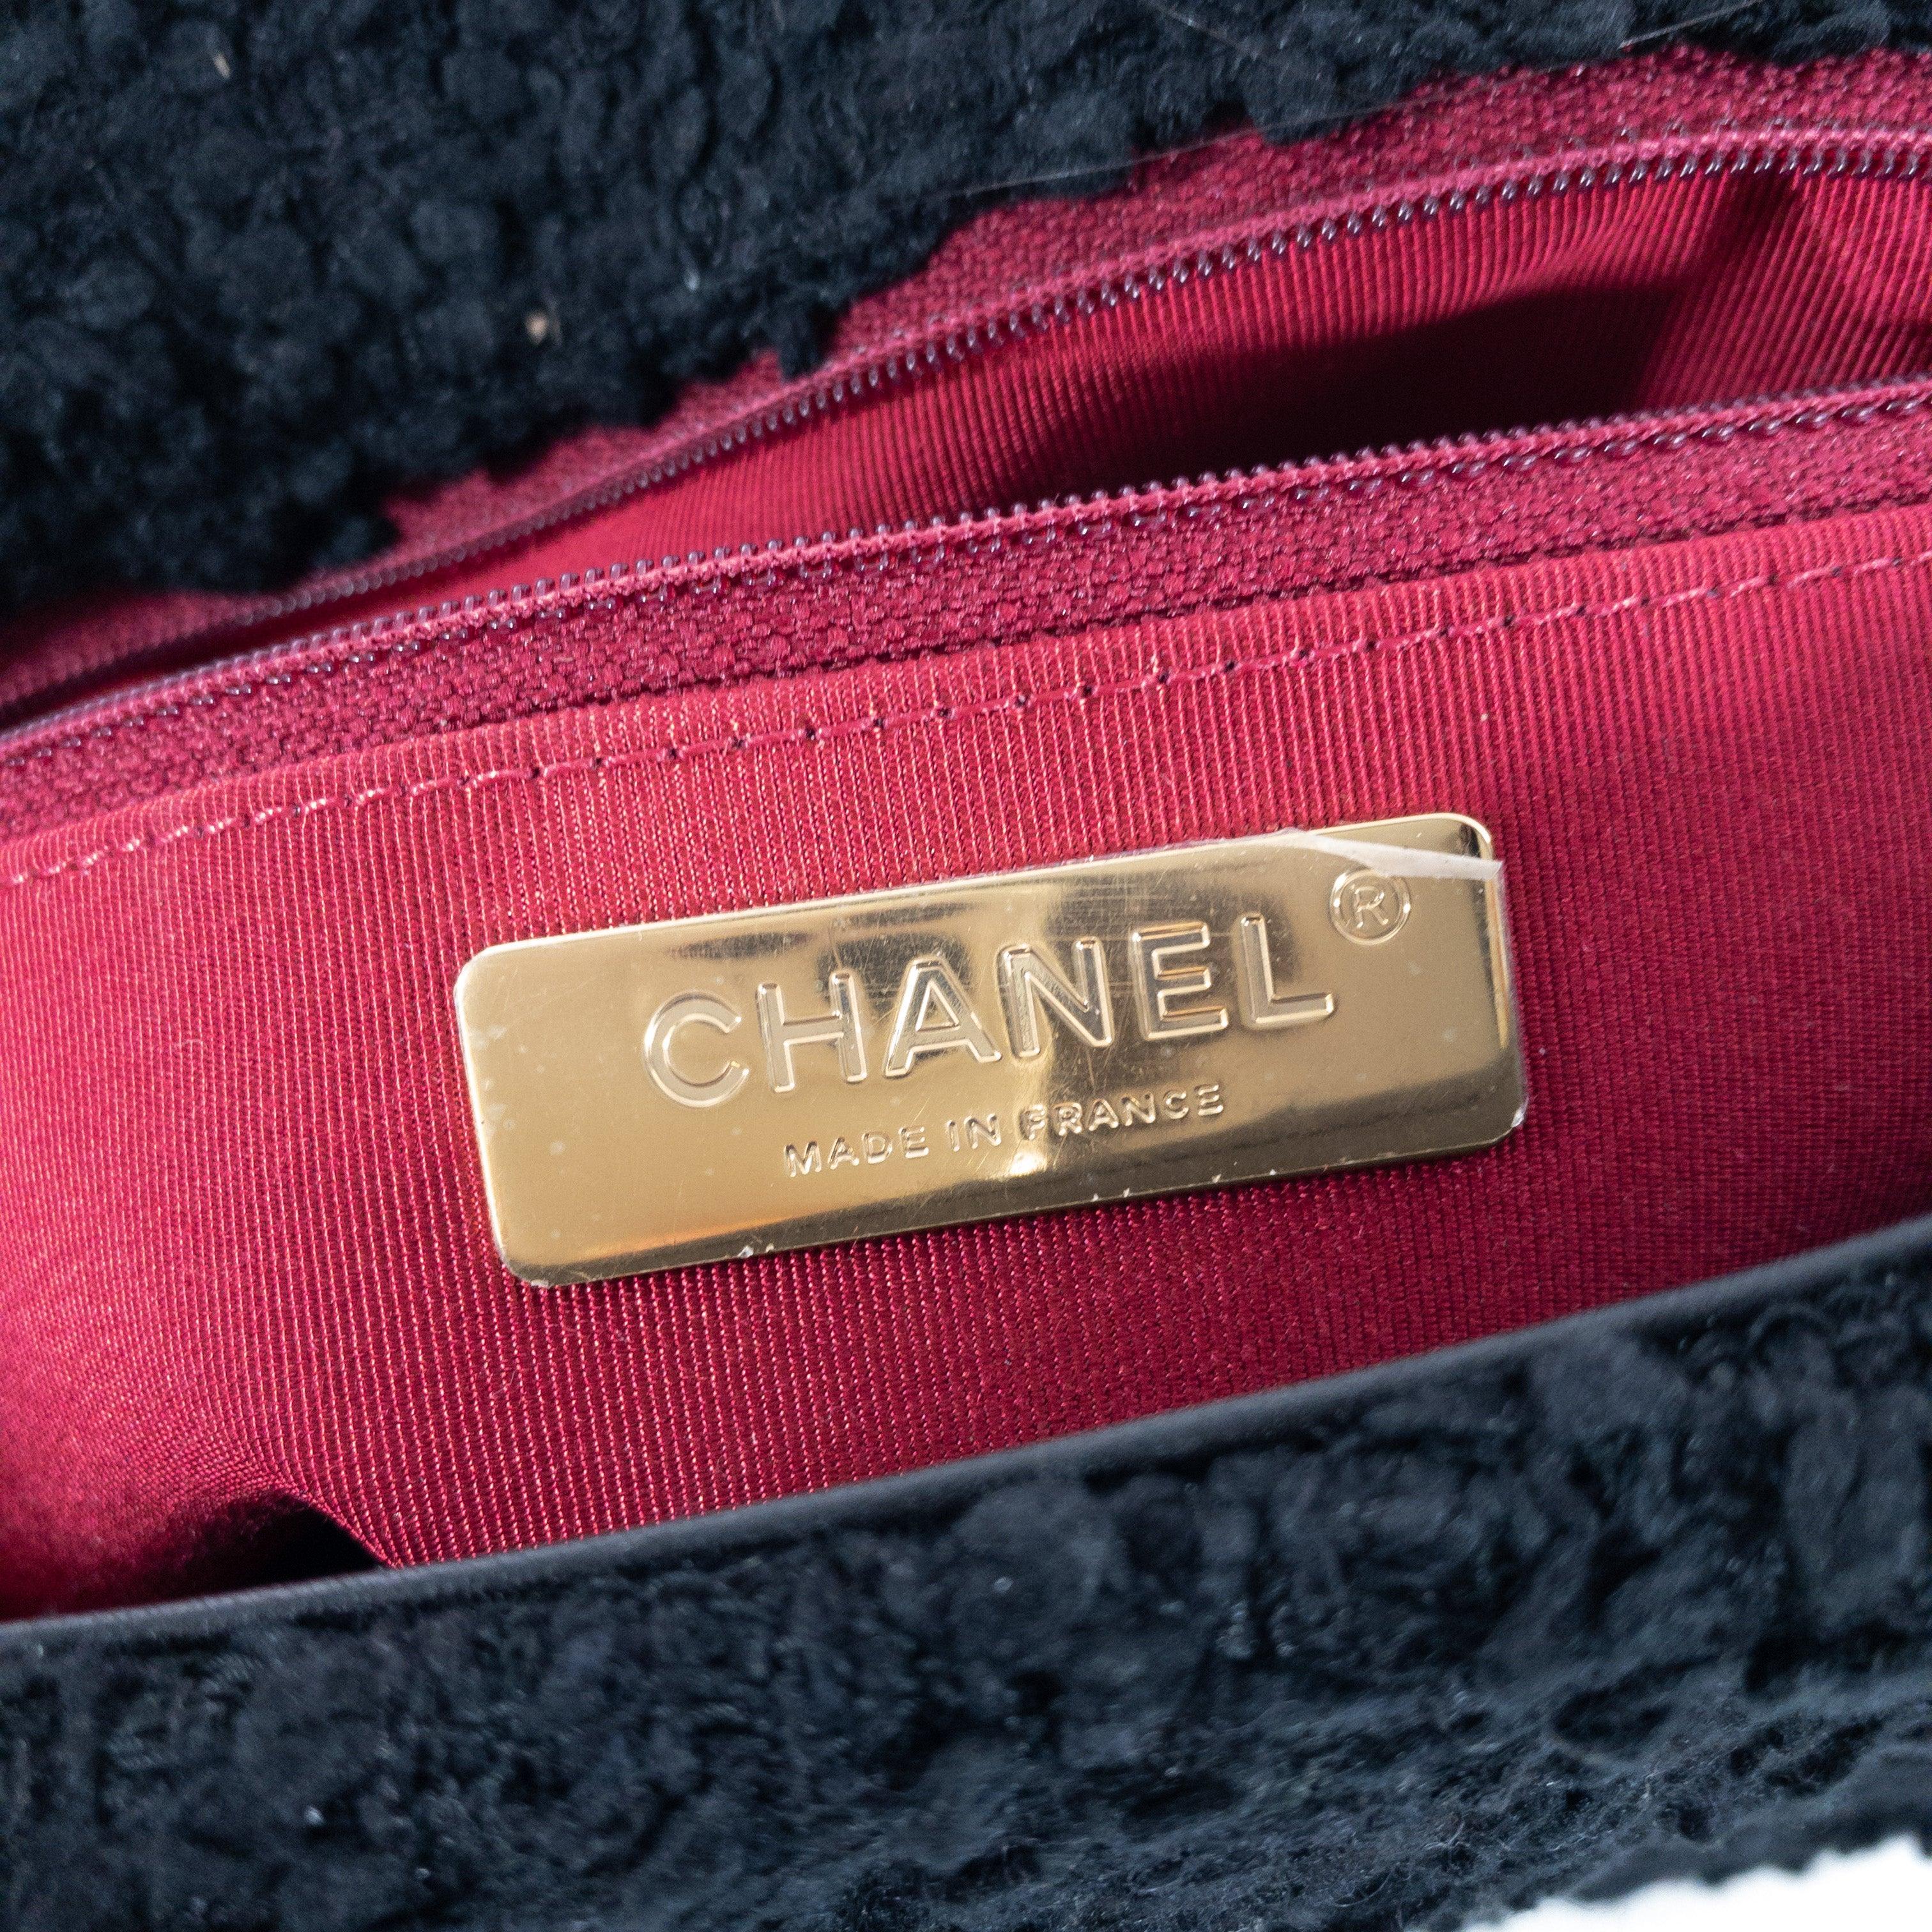 Chanel - Tweed noir - Grand 19 - Rabat en vente 5